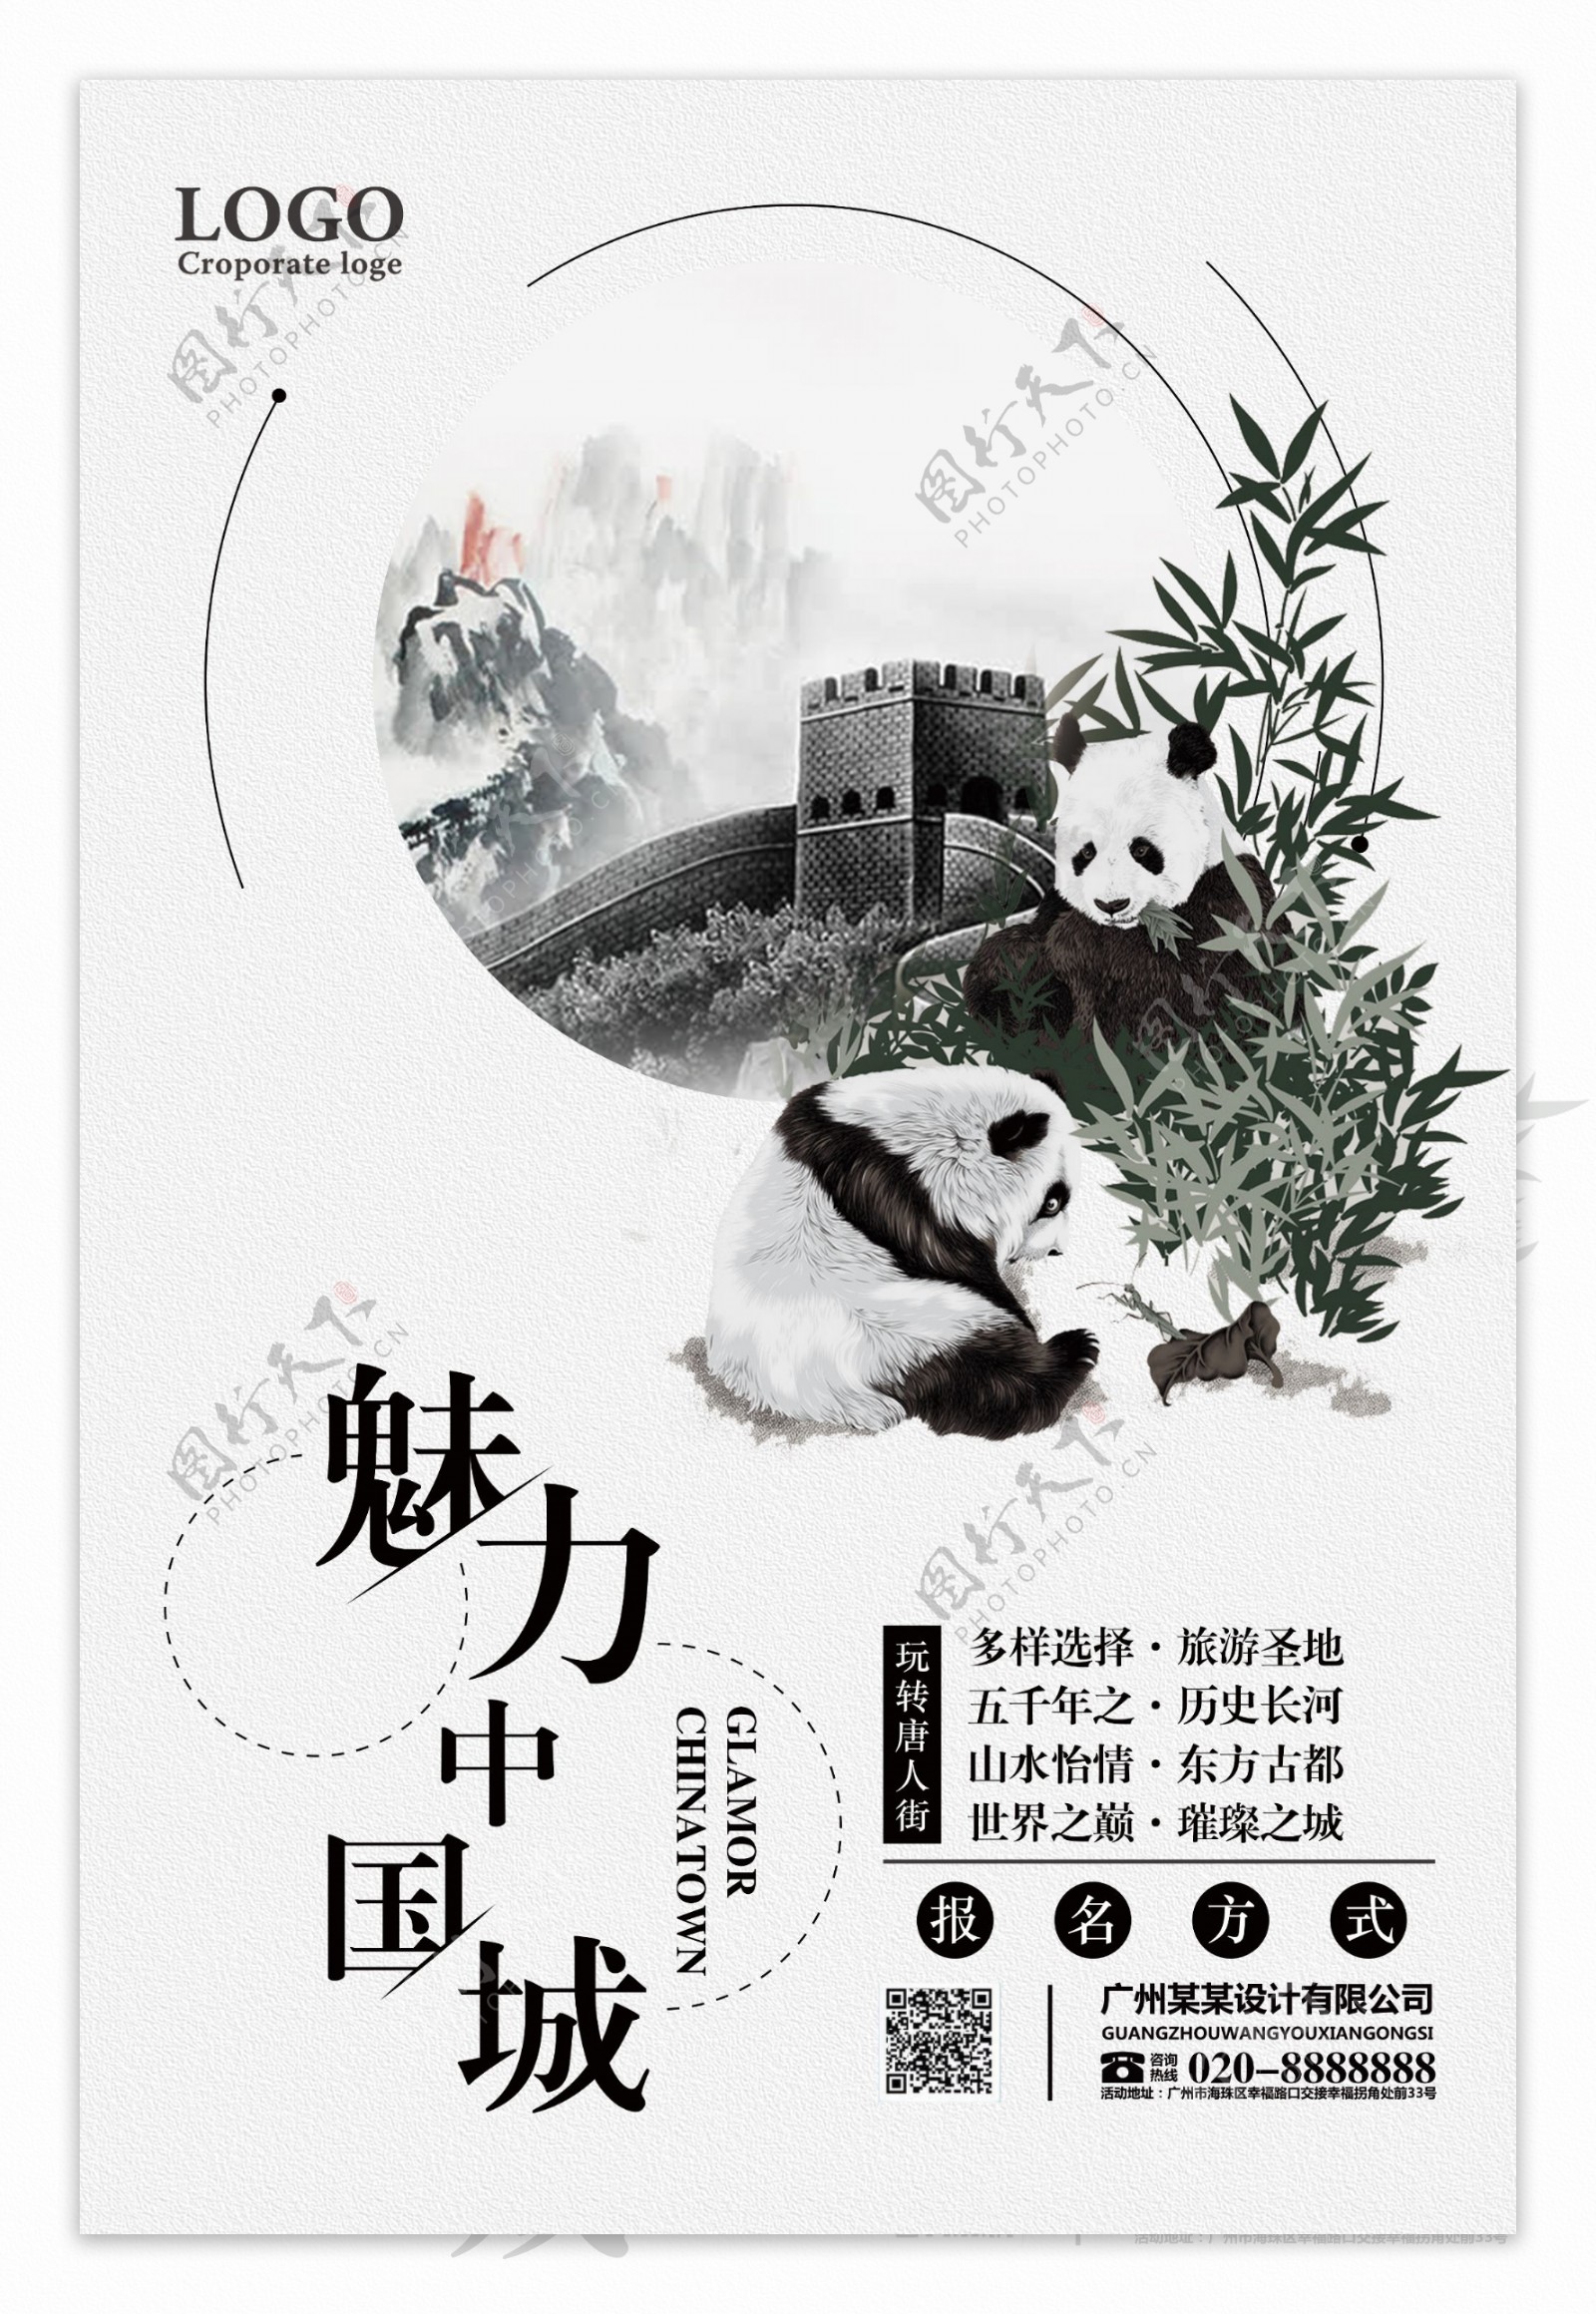 水墨风魅力中国城宣传海报设计